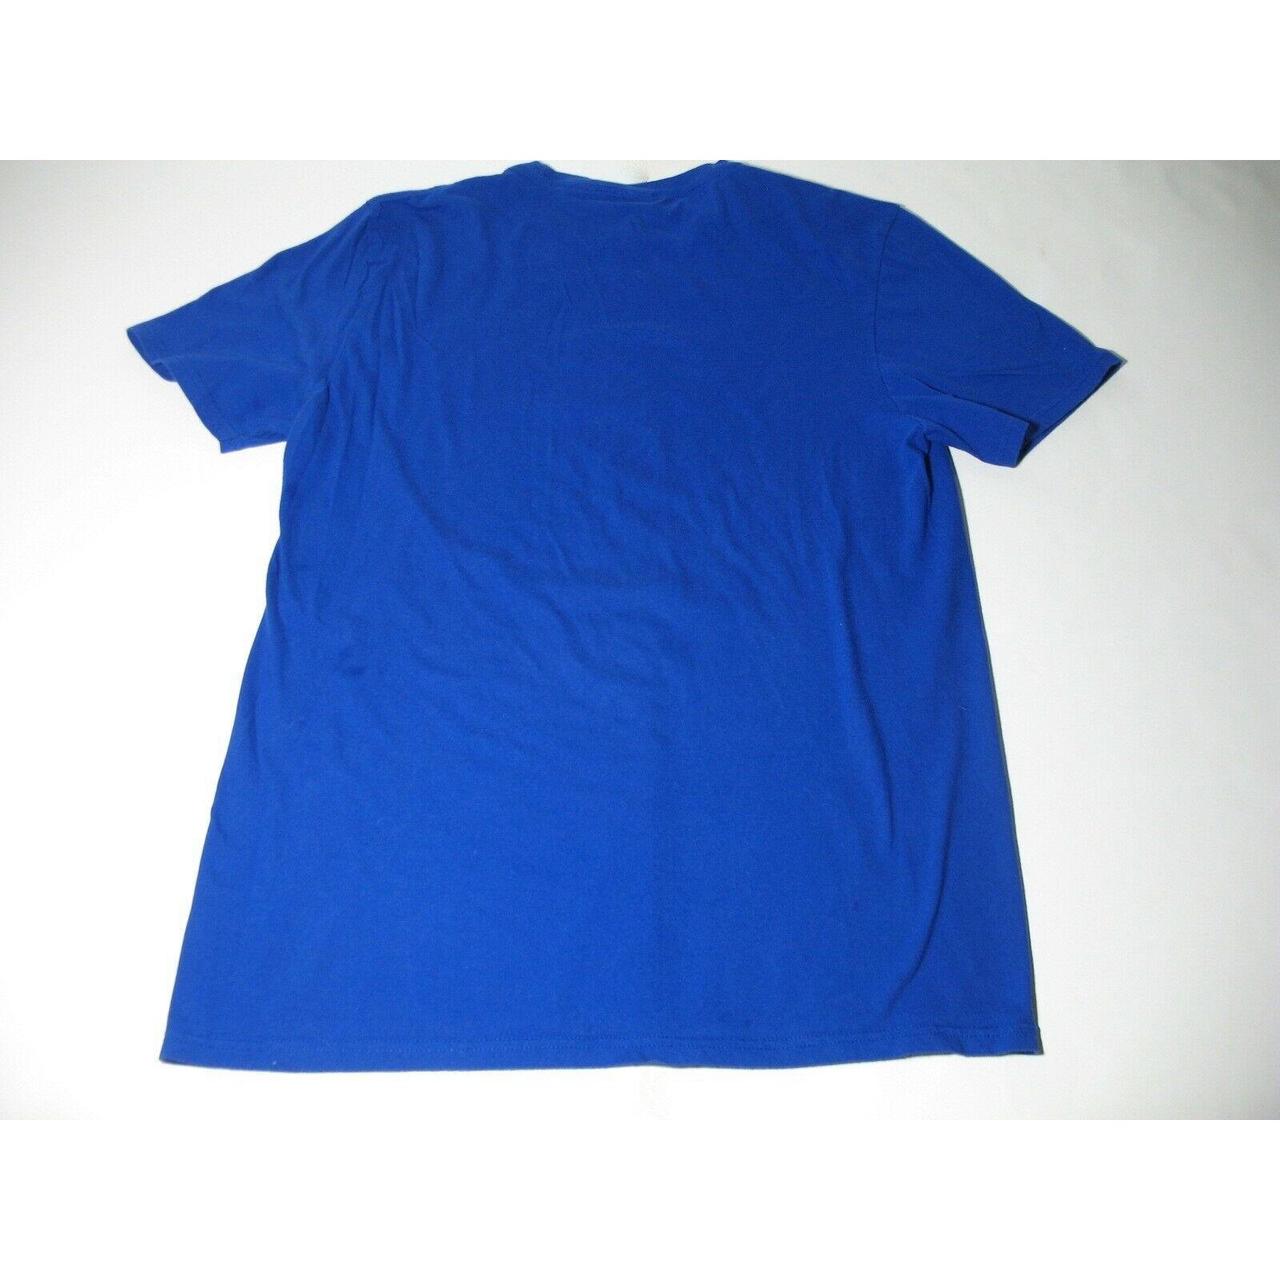 Product Image 3 - Pokemon Adult Blue T-Shirt Size